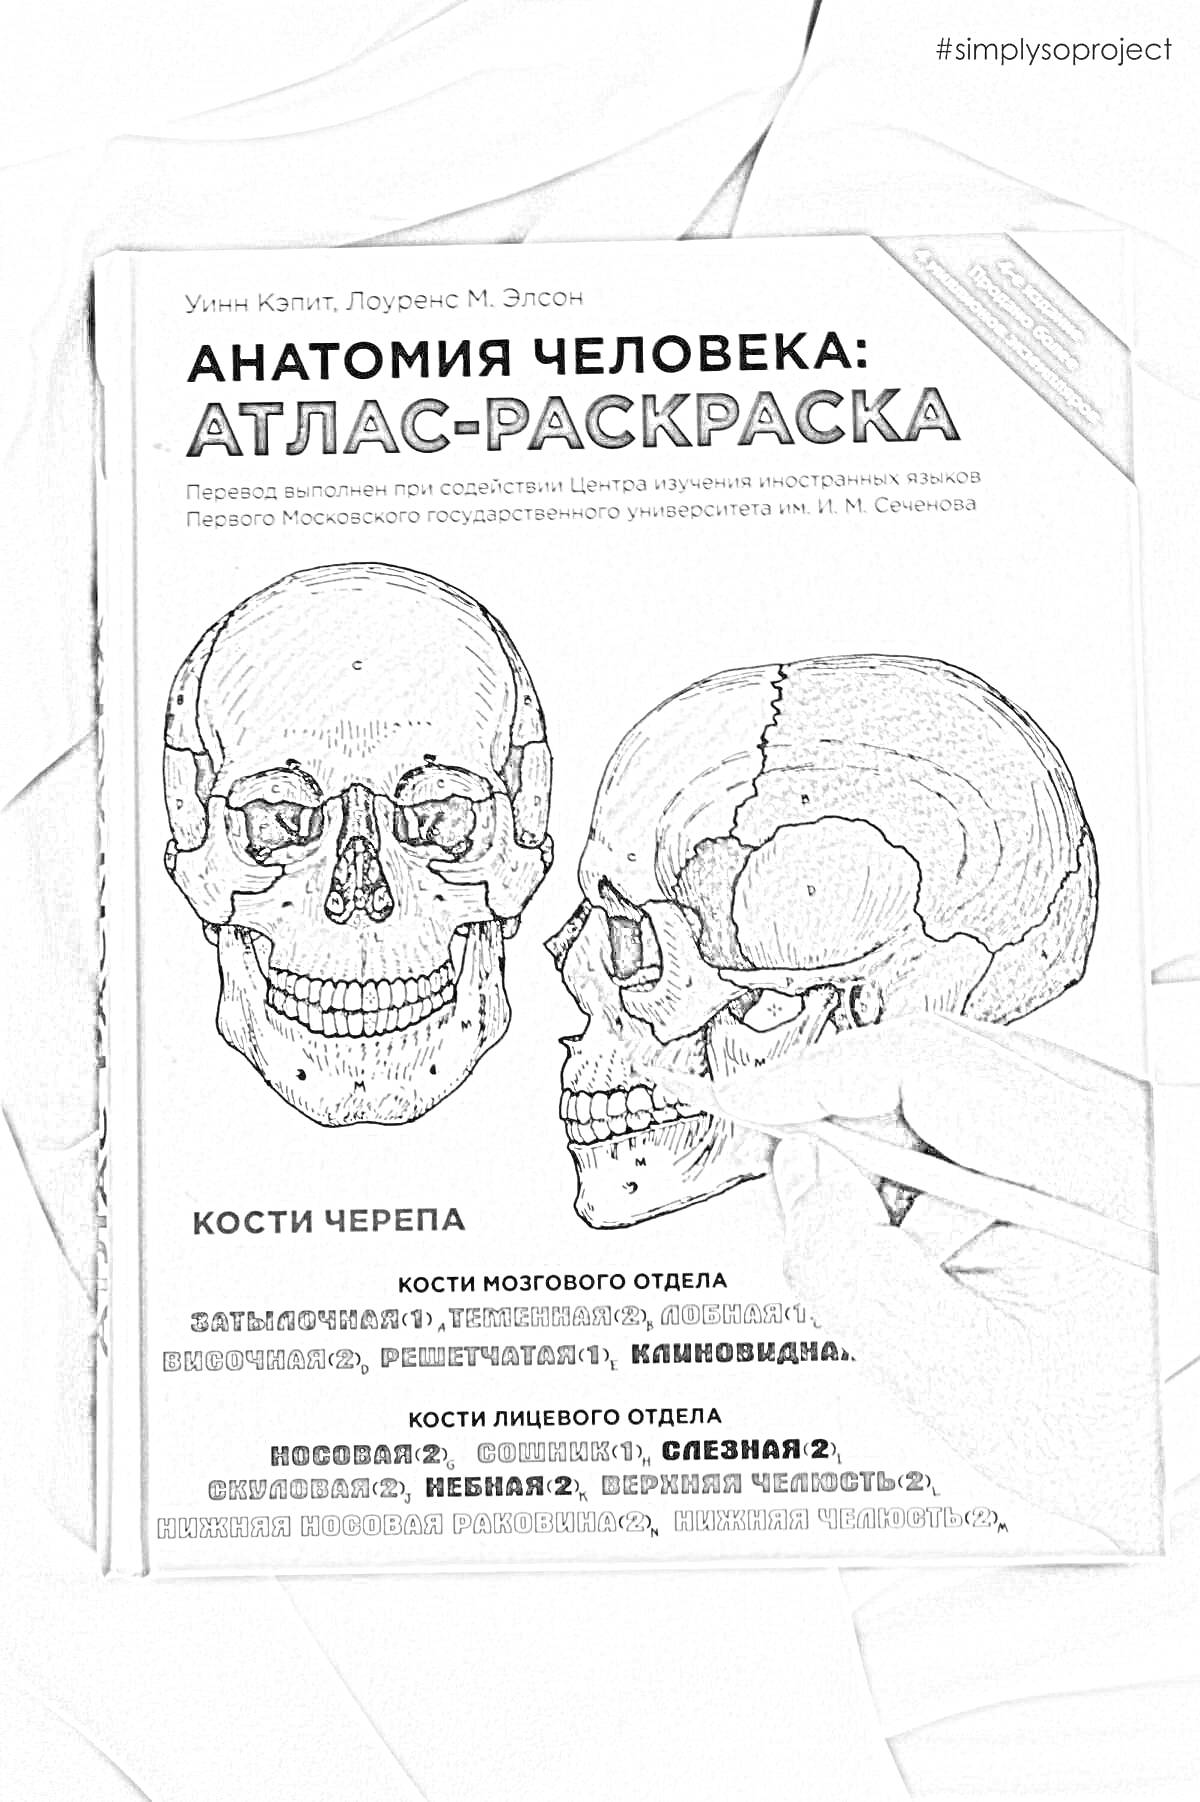 РаскраскаАтлас анатомии человека: раскраска. Человеческий череп с подписями структур